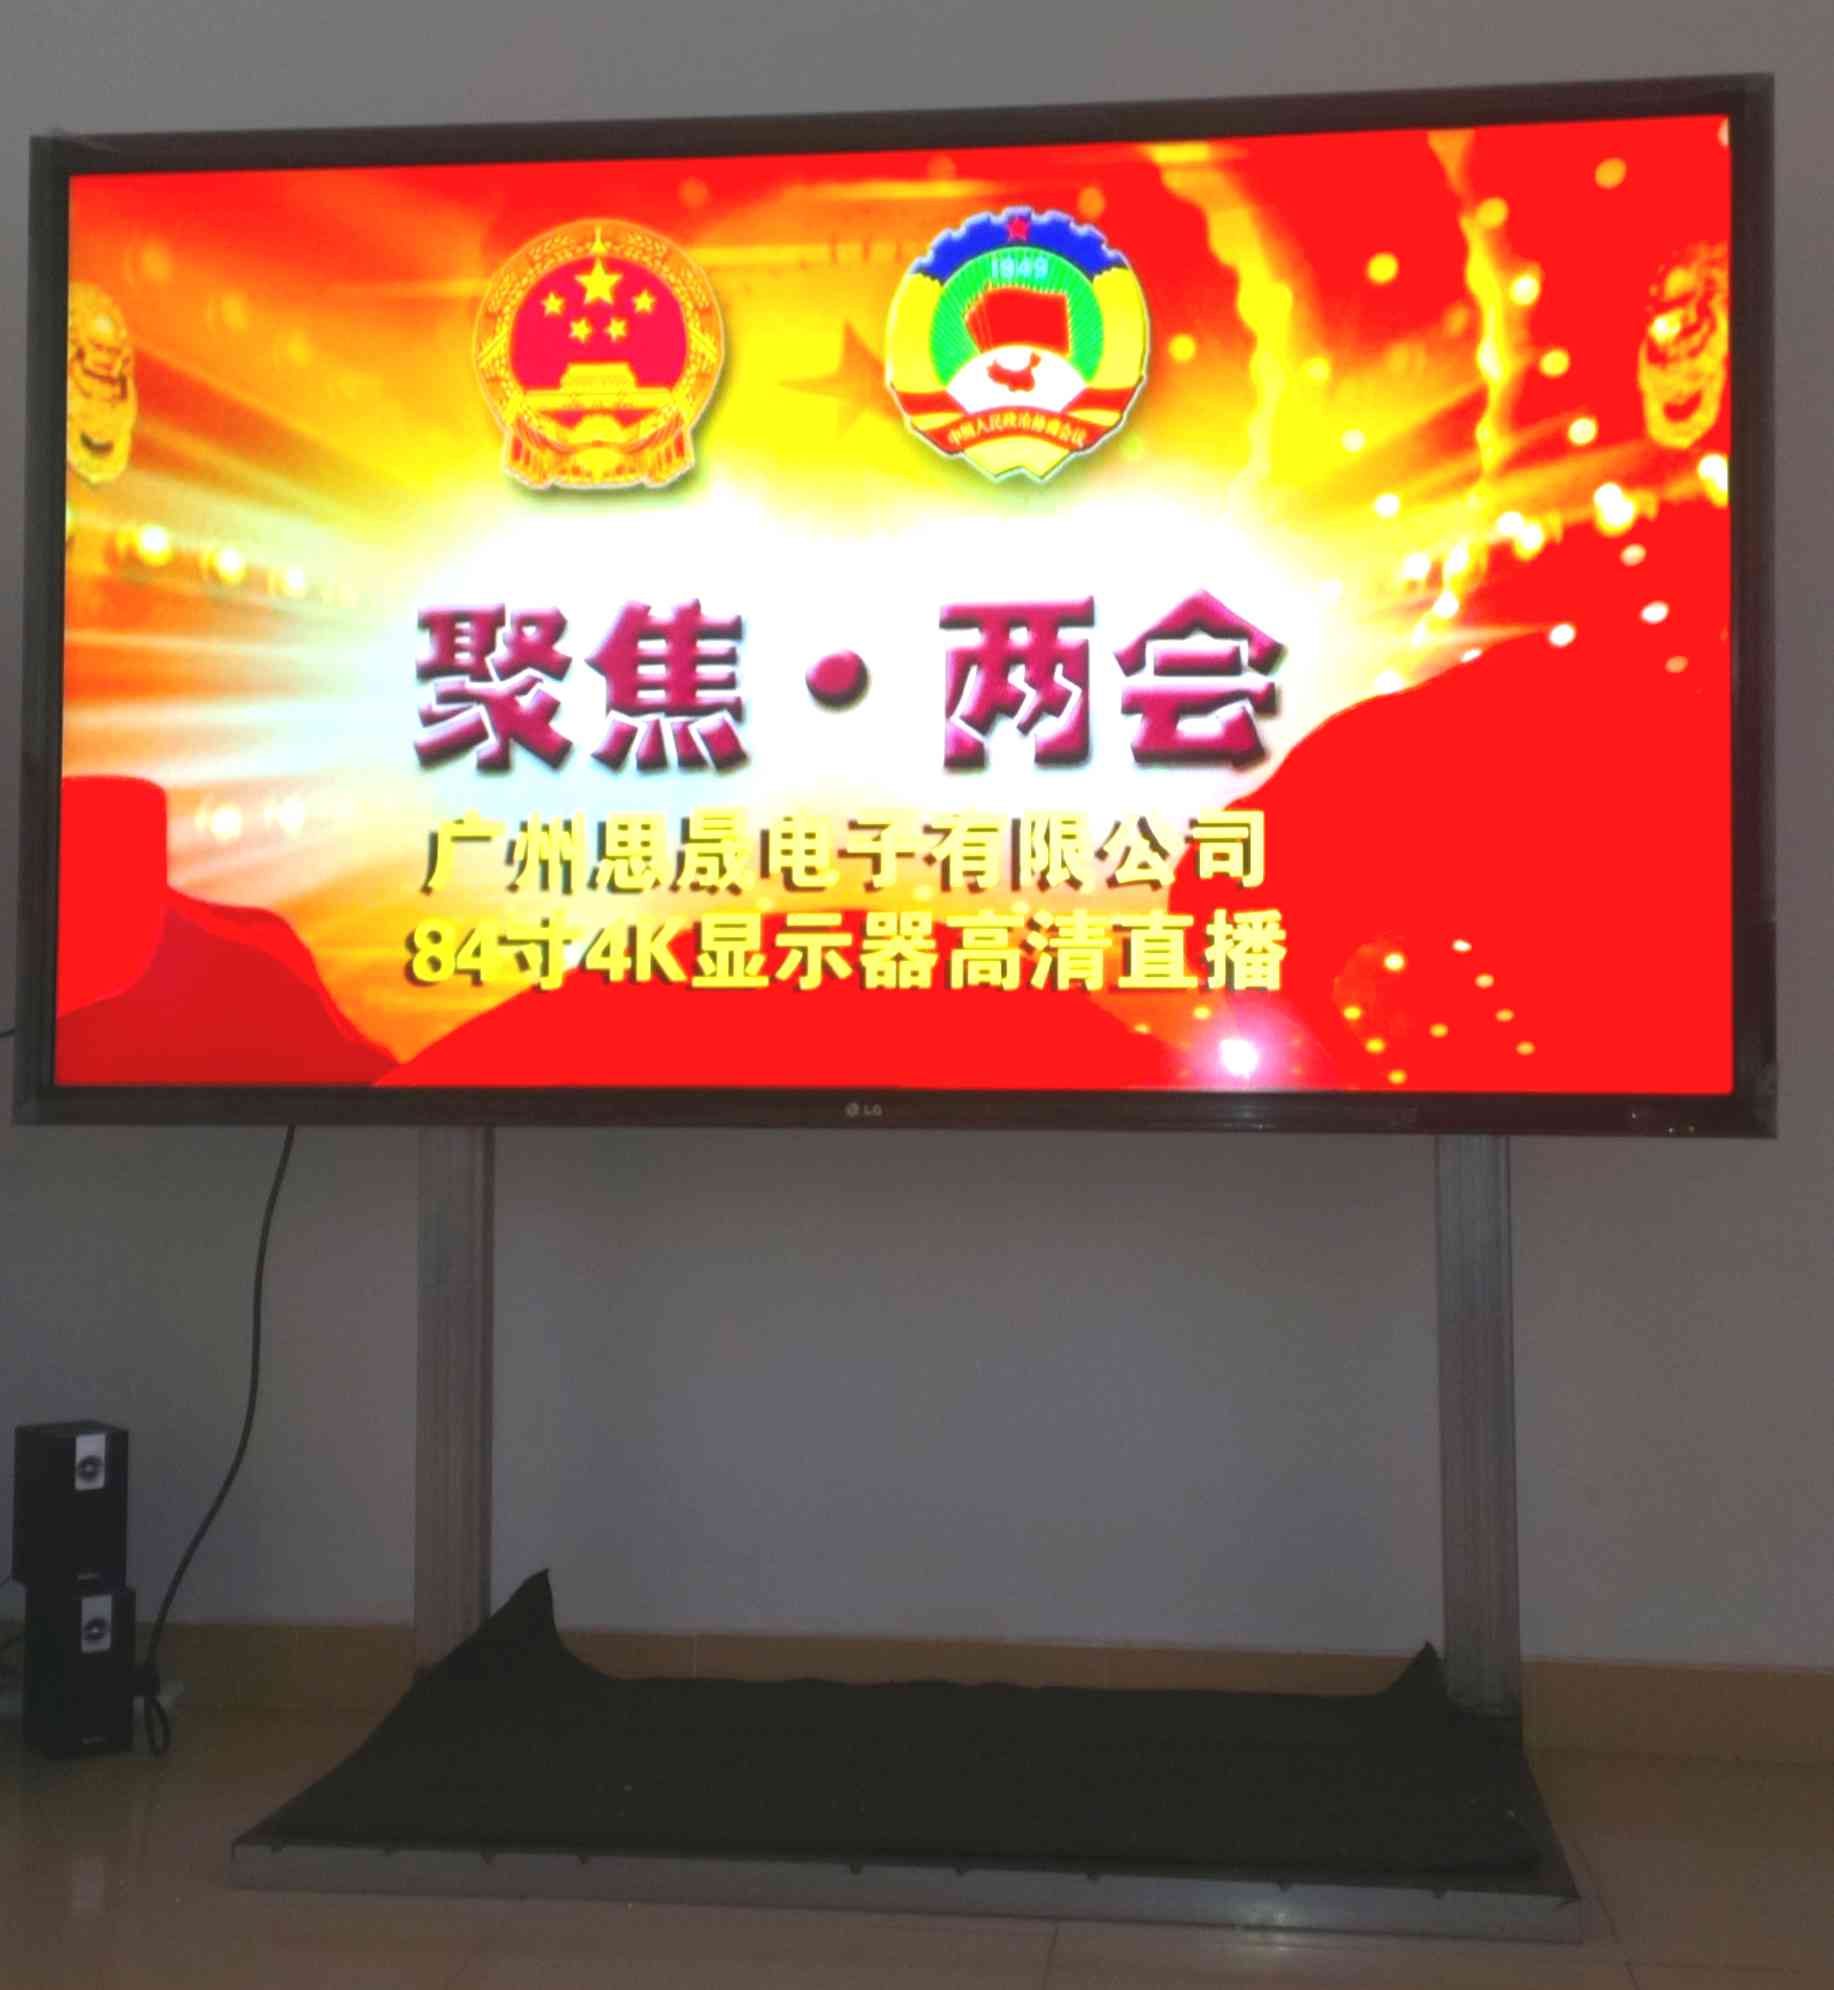 广州思晟低价租赁84寸/80寸高清液晶显示器